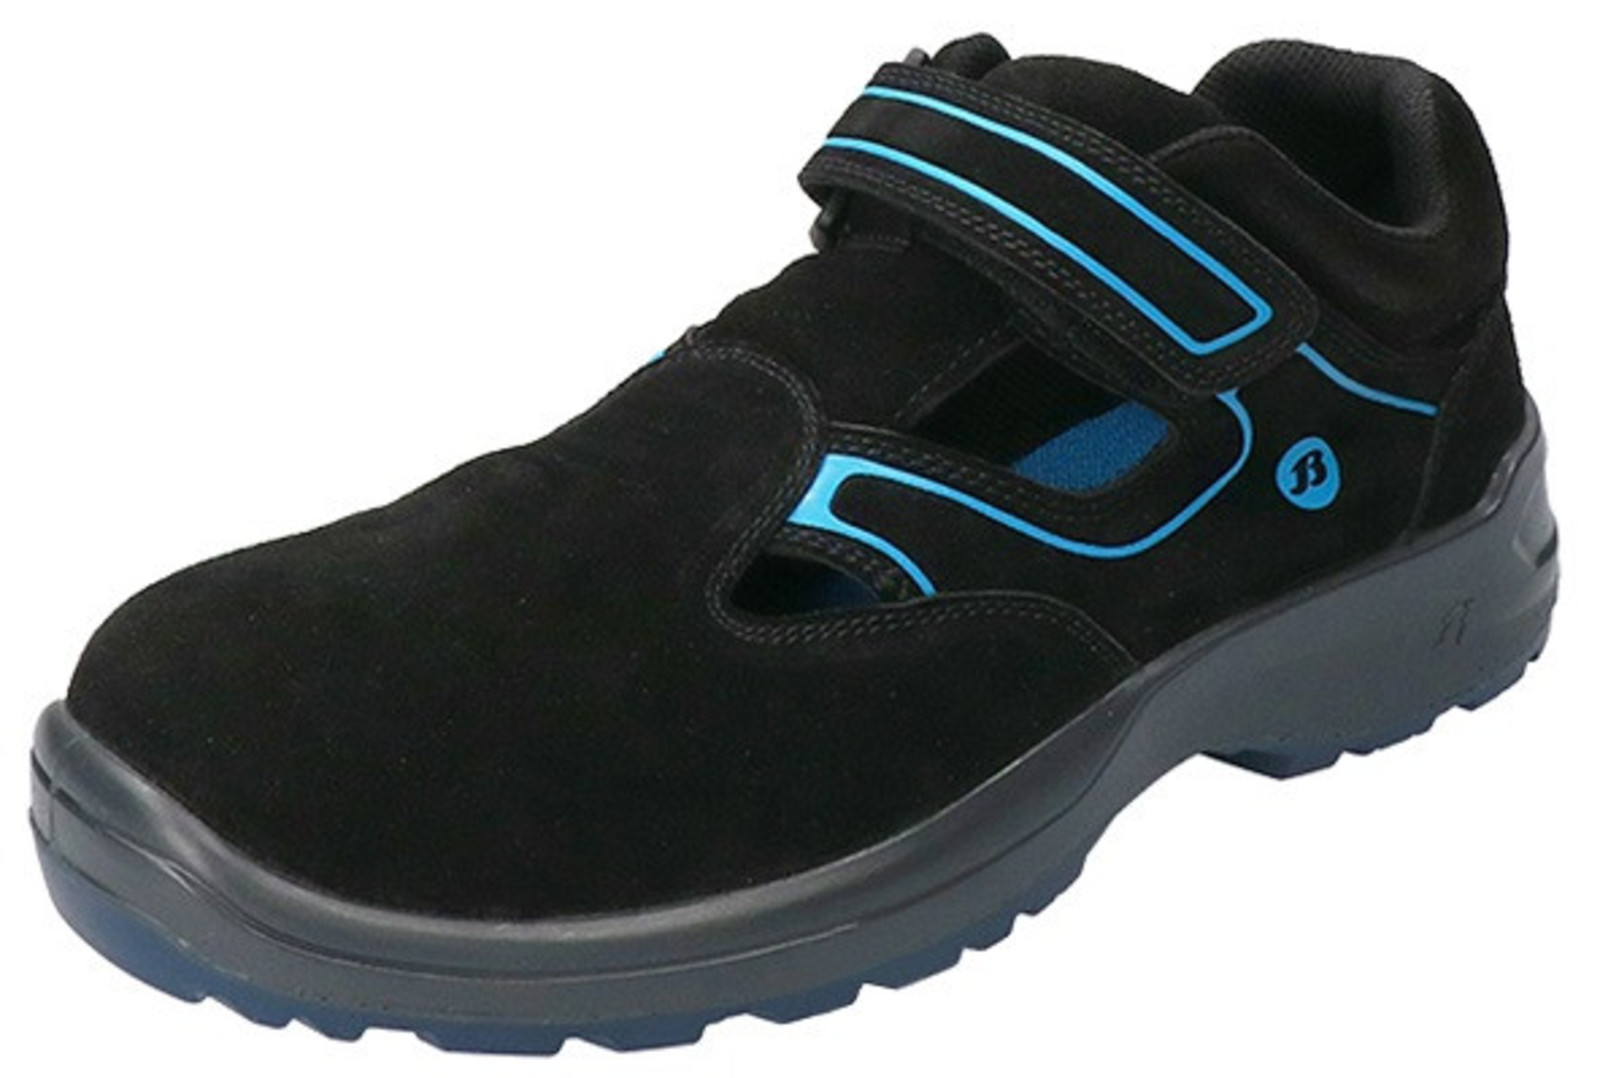 Bezpečnostné sandále Baťa Falcon ESD S1 - veľkosť: 41, farba: čierna